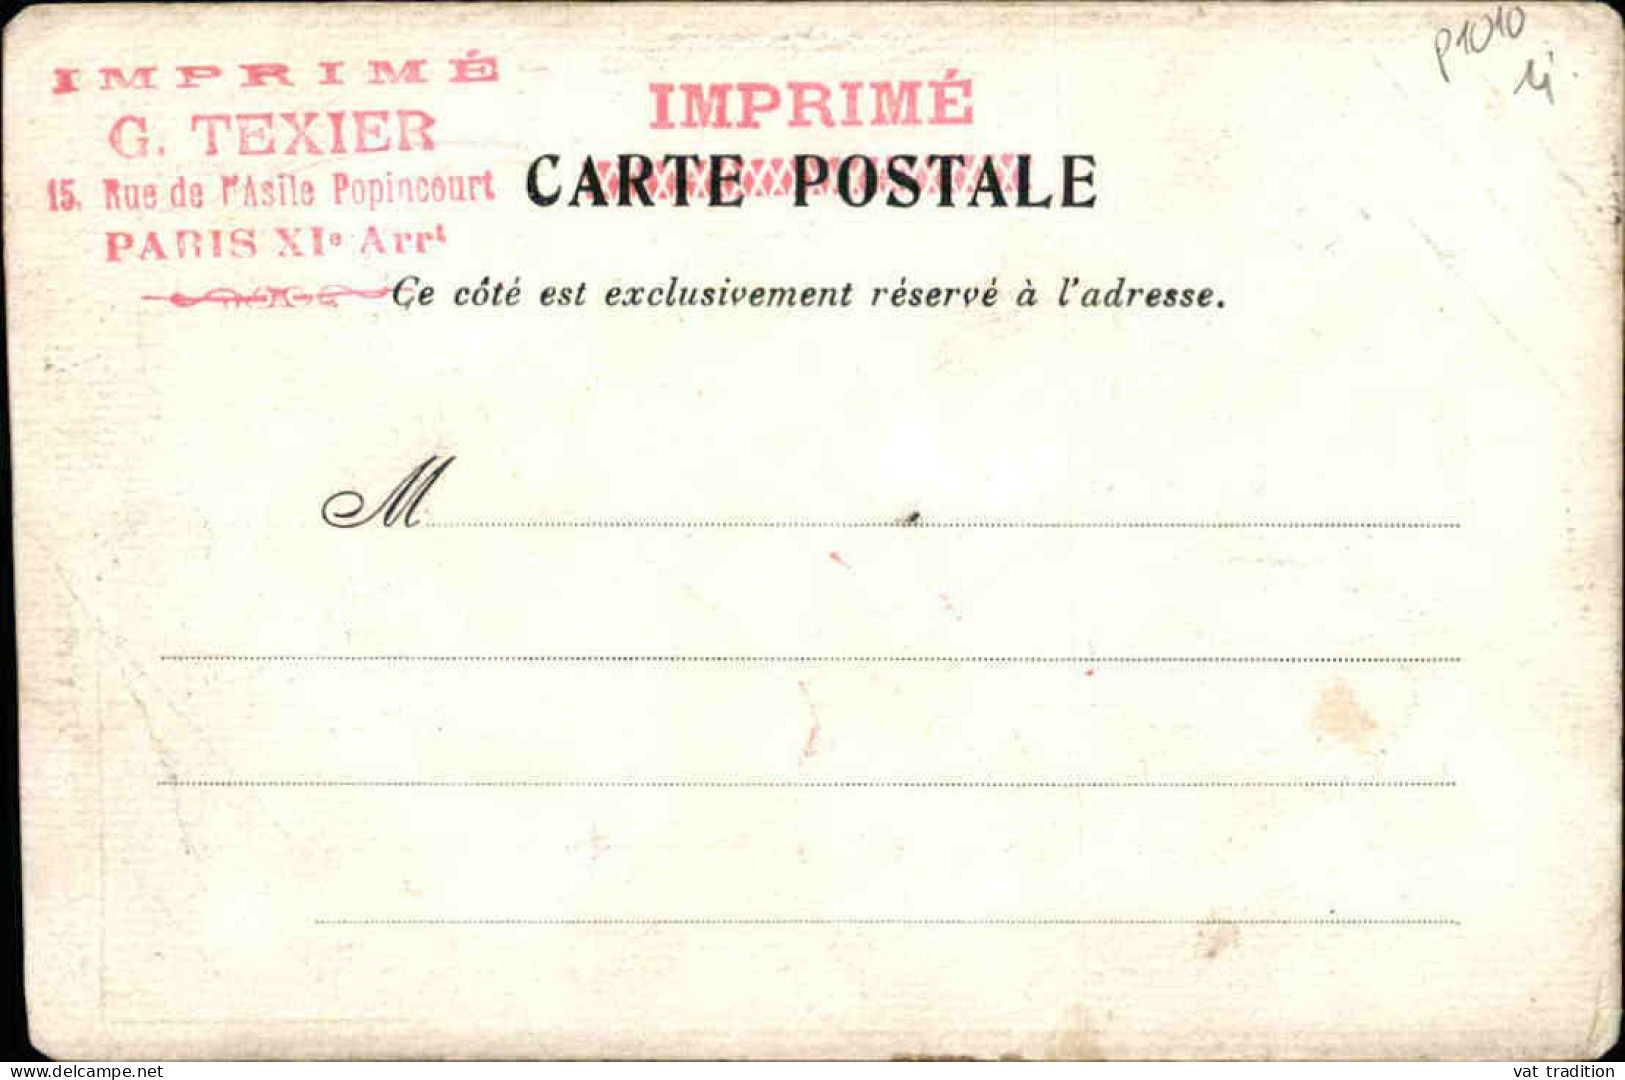 POLITIQUE - Juillet 1903  " Victor à Toi Mon Coeur  " - L 152260 - Satiriques